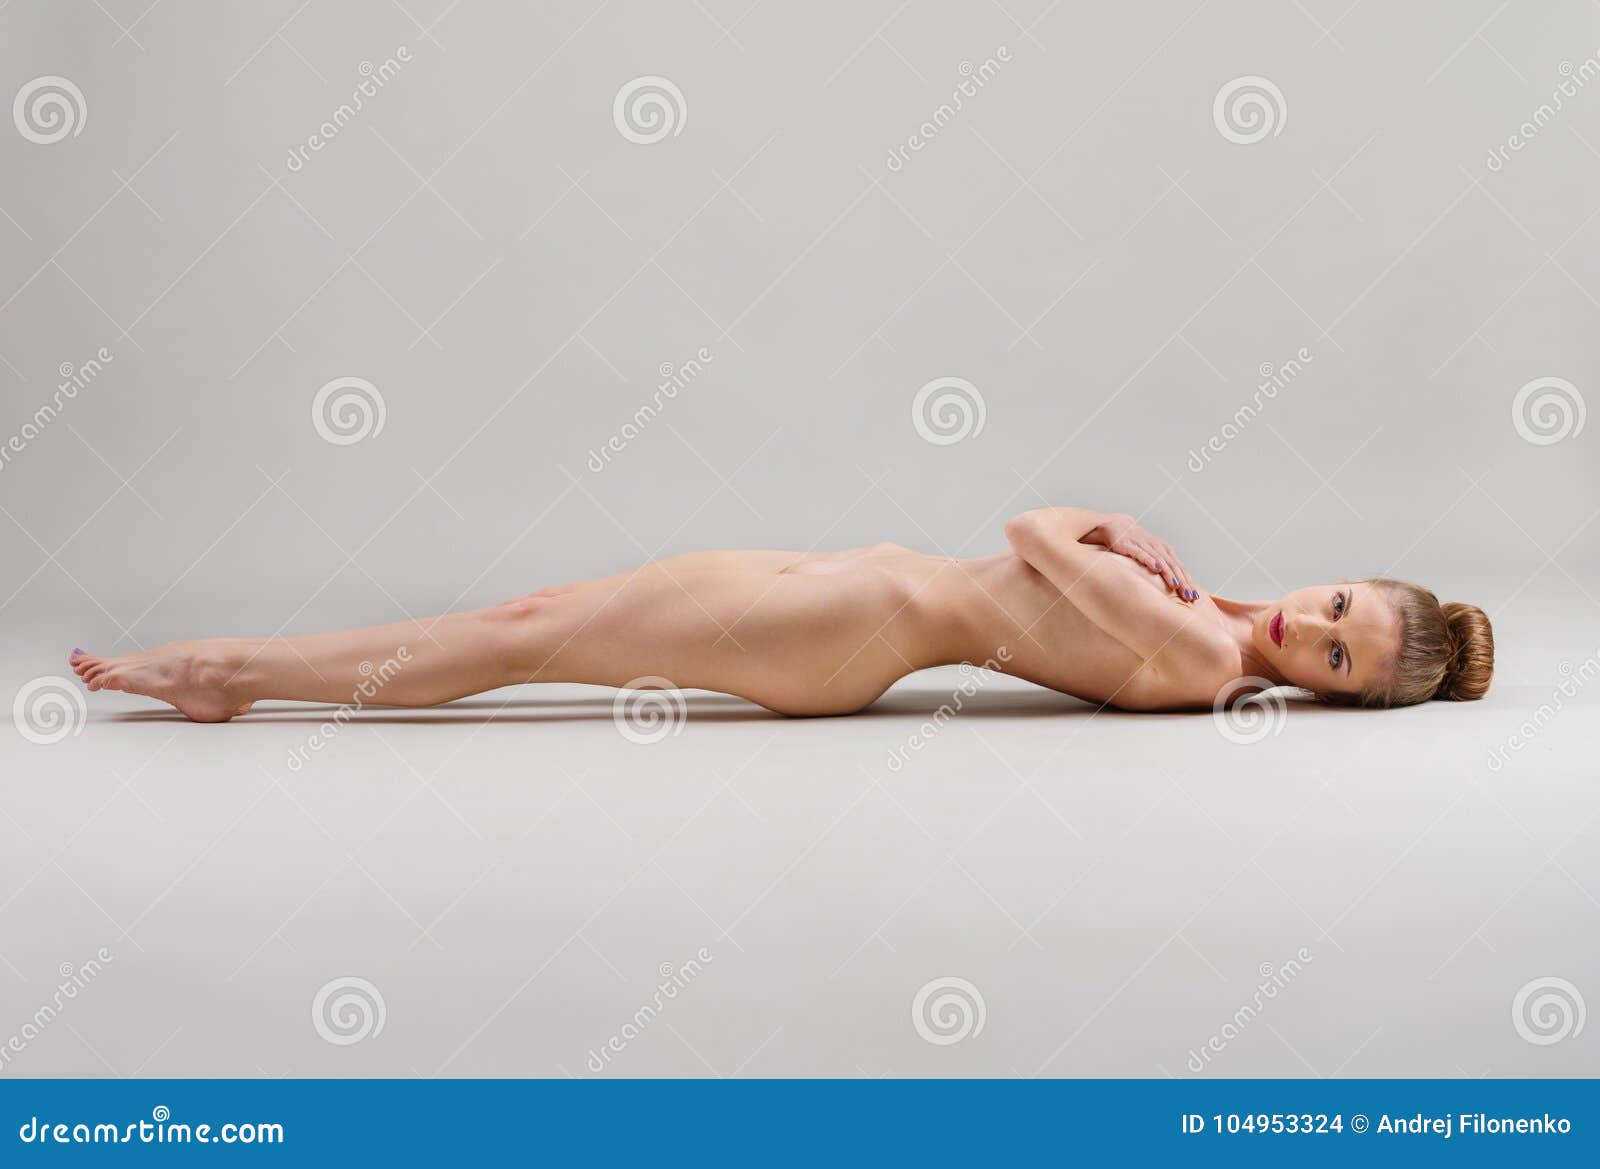 Julie Benz Naked Porno Naked Female Photoshoot